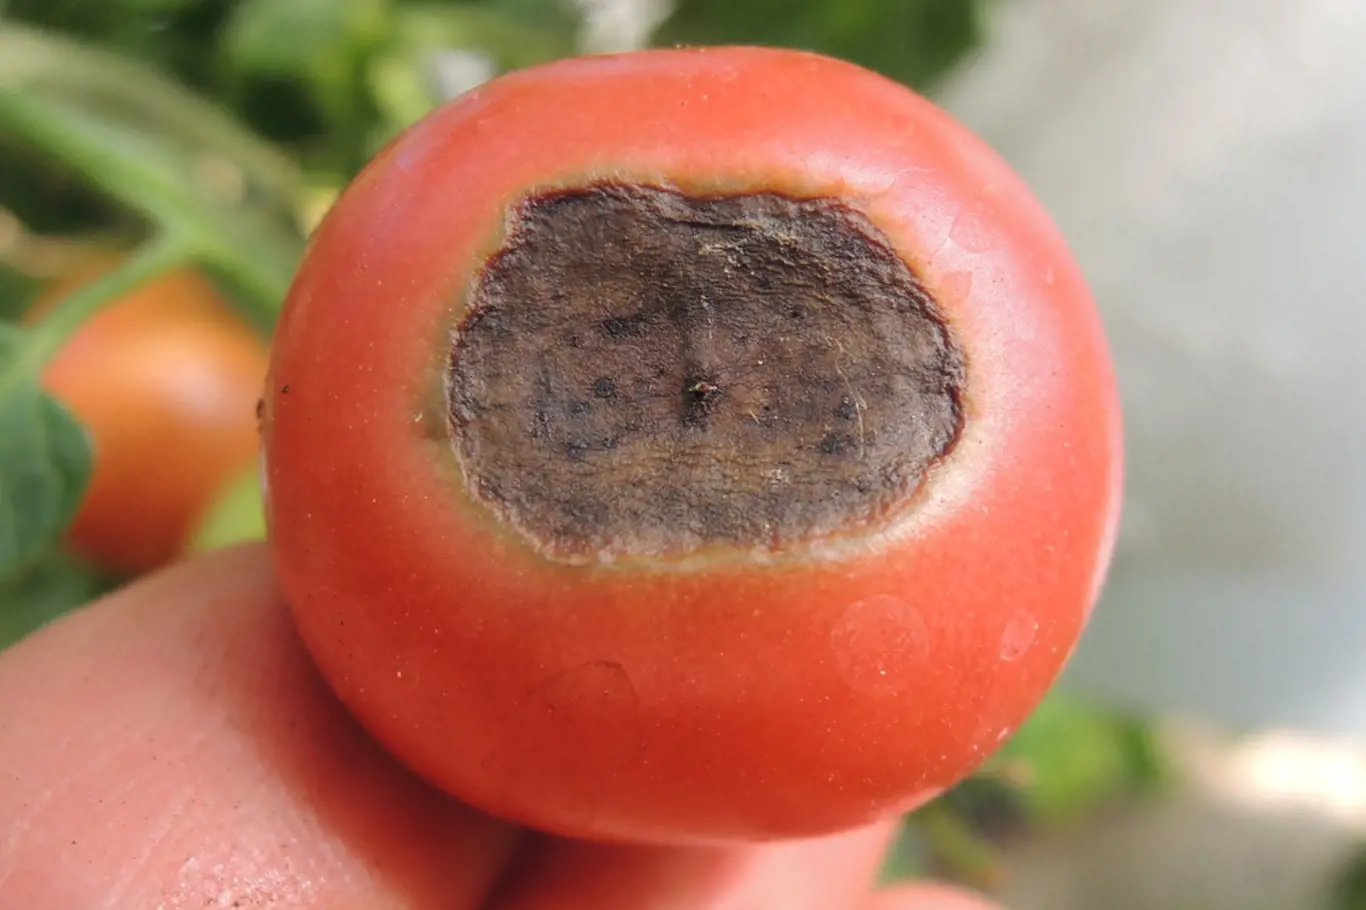 Co dělat, když konce rajčat zasychají?